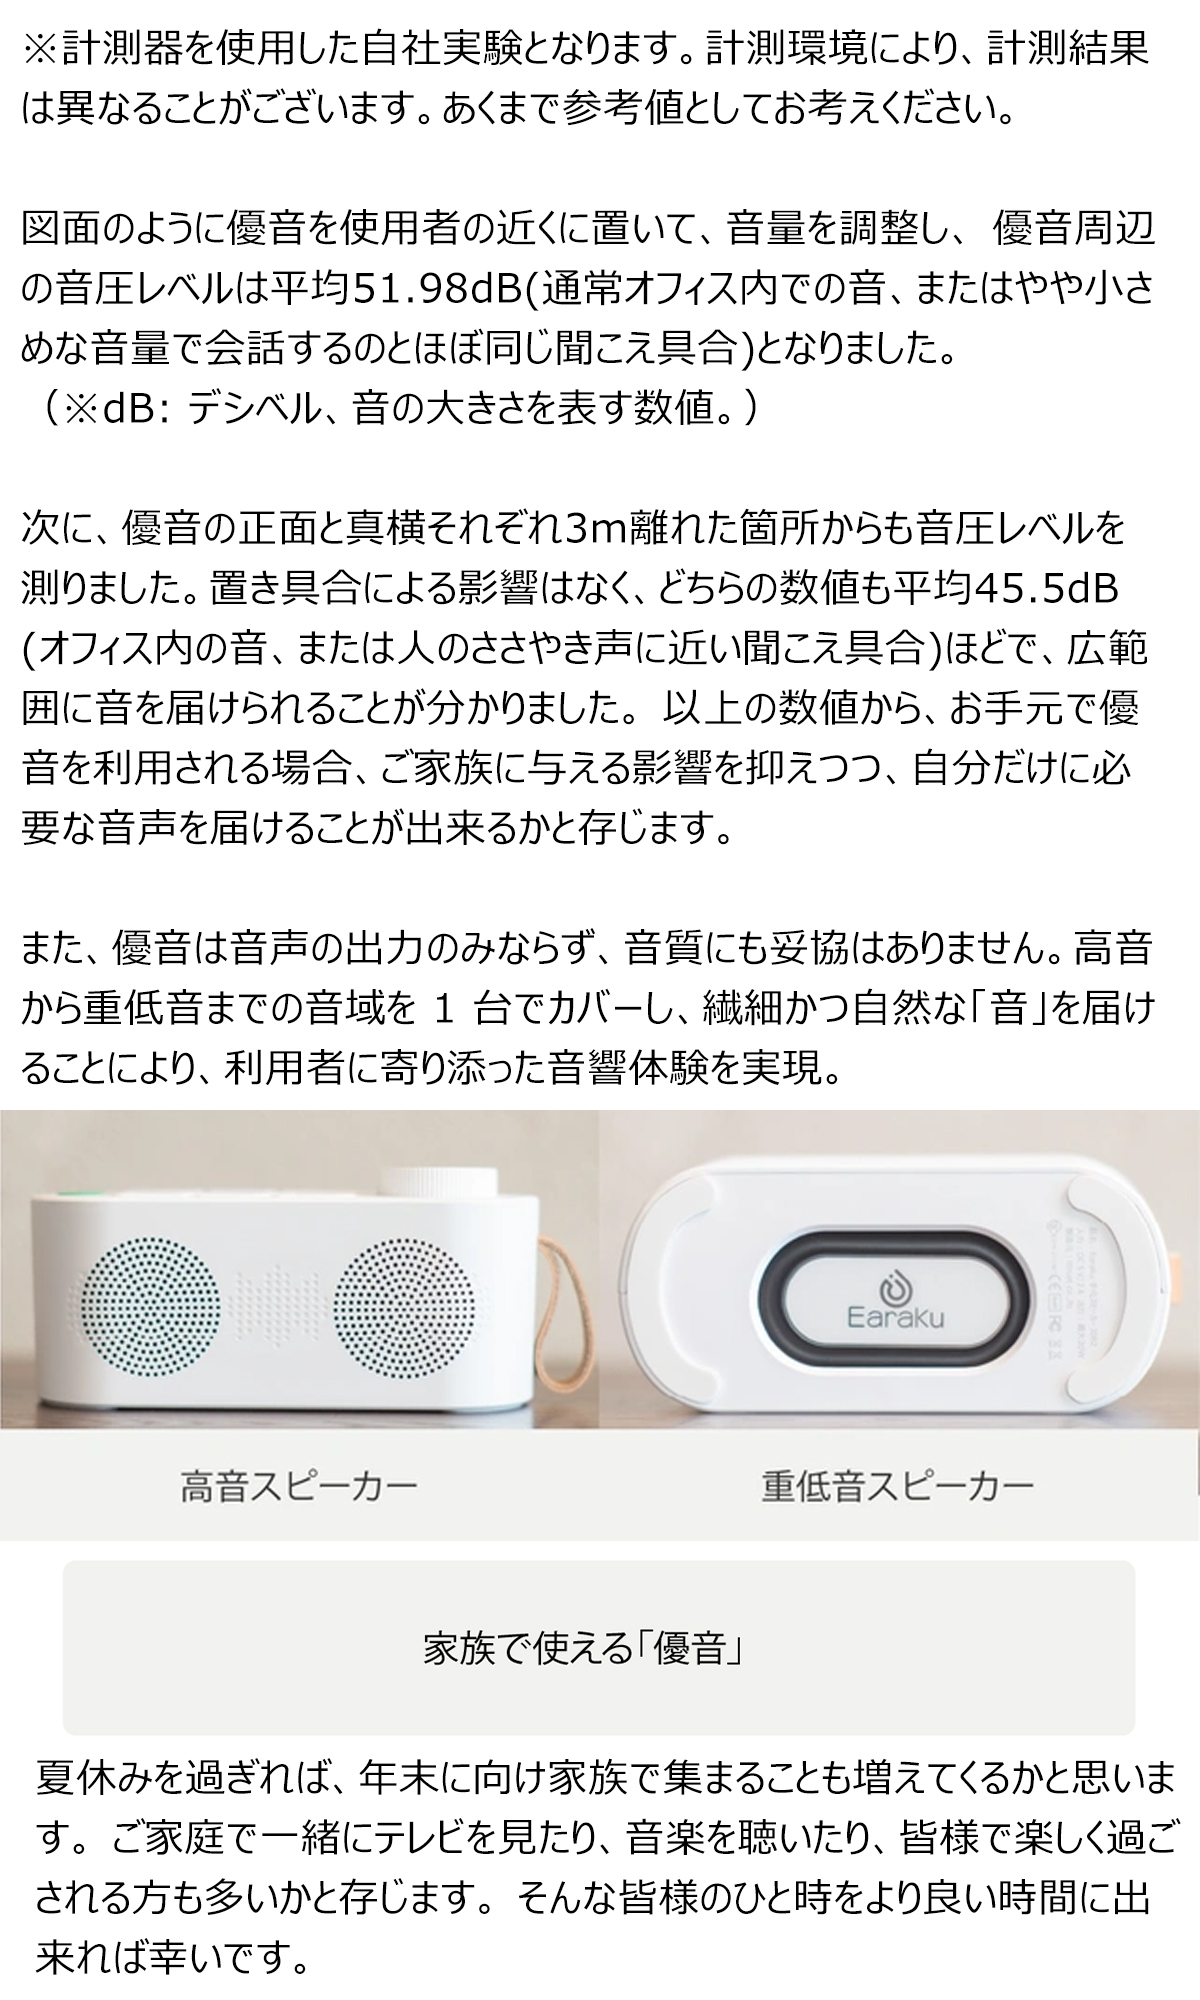 優音-Youon 手元スピーカー 送信機付き テレビスピーカー 光デジタル